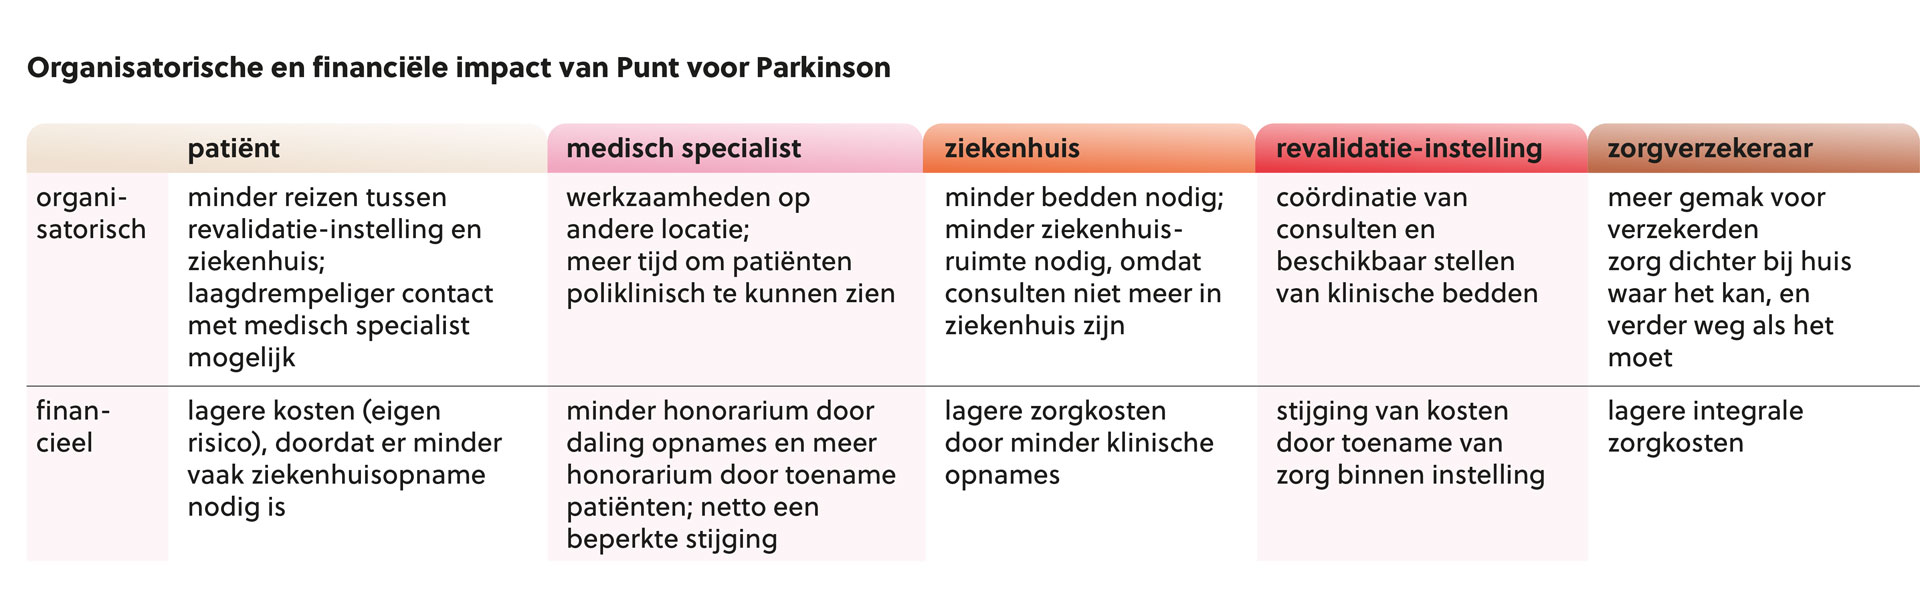 Tabel 1 Organisatorische en financiële impact van Punt voor Parkinson   